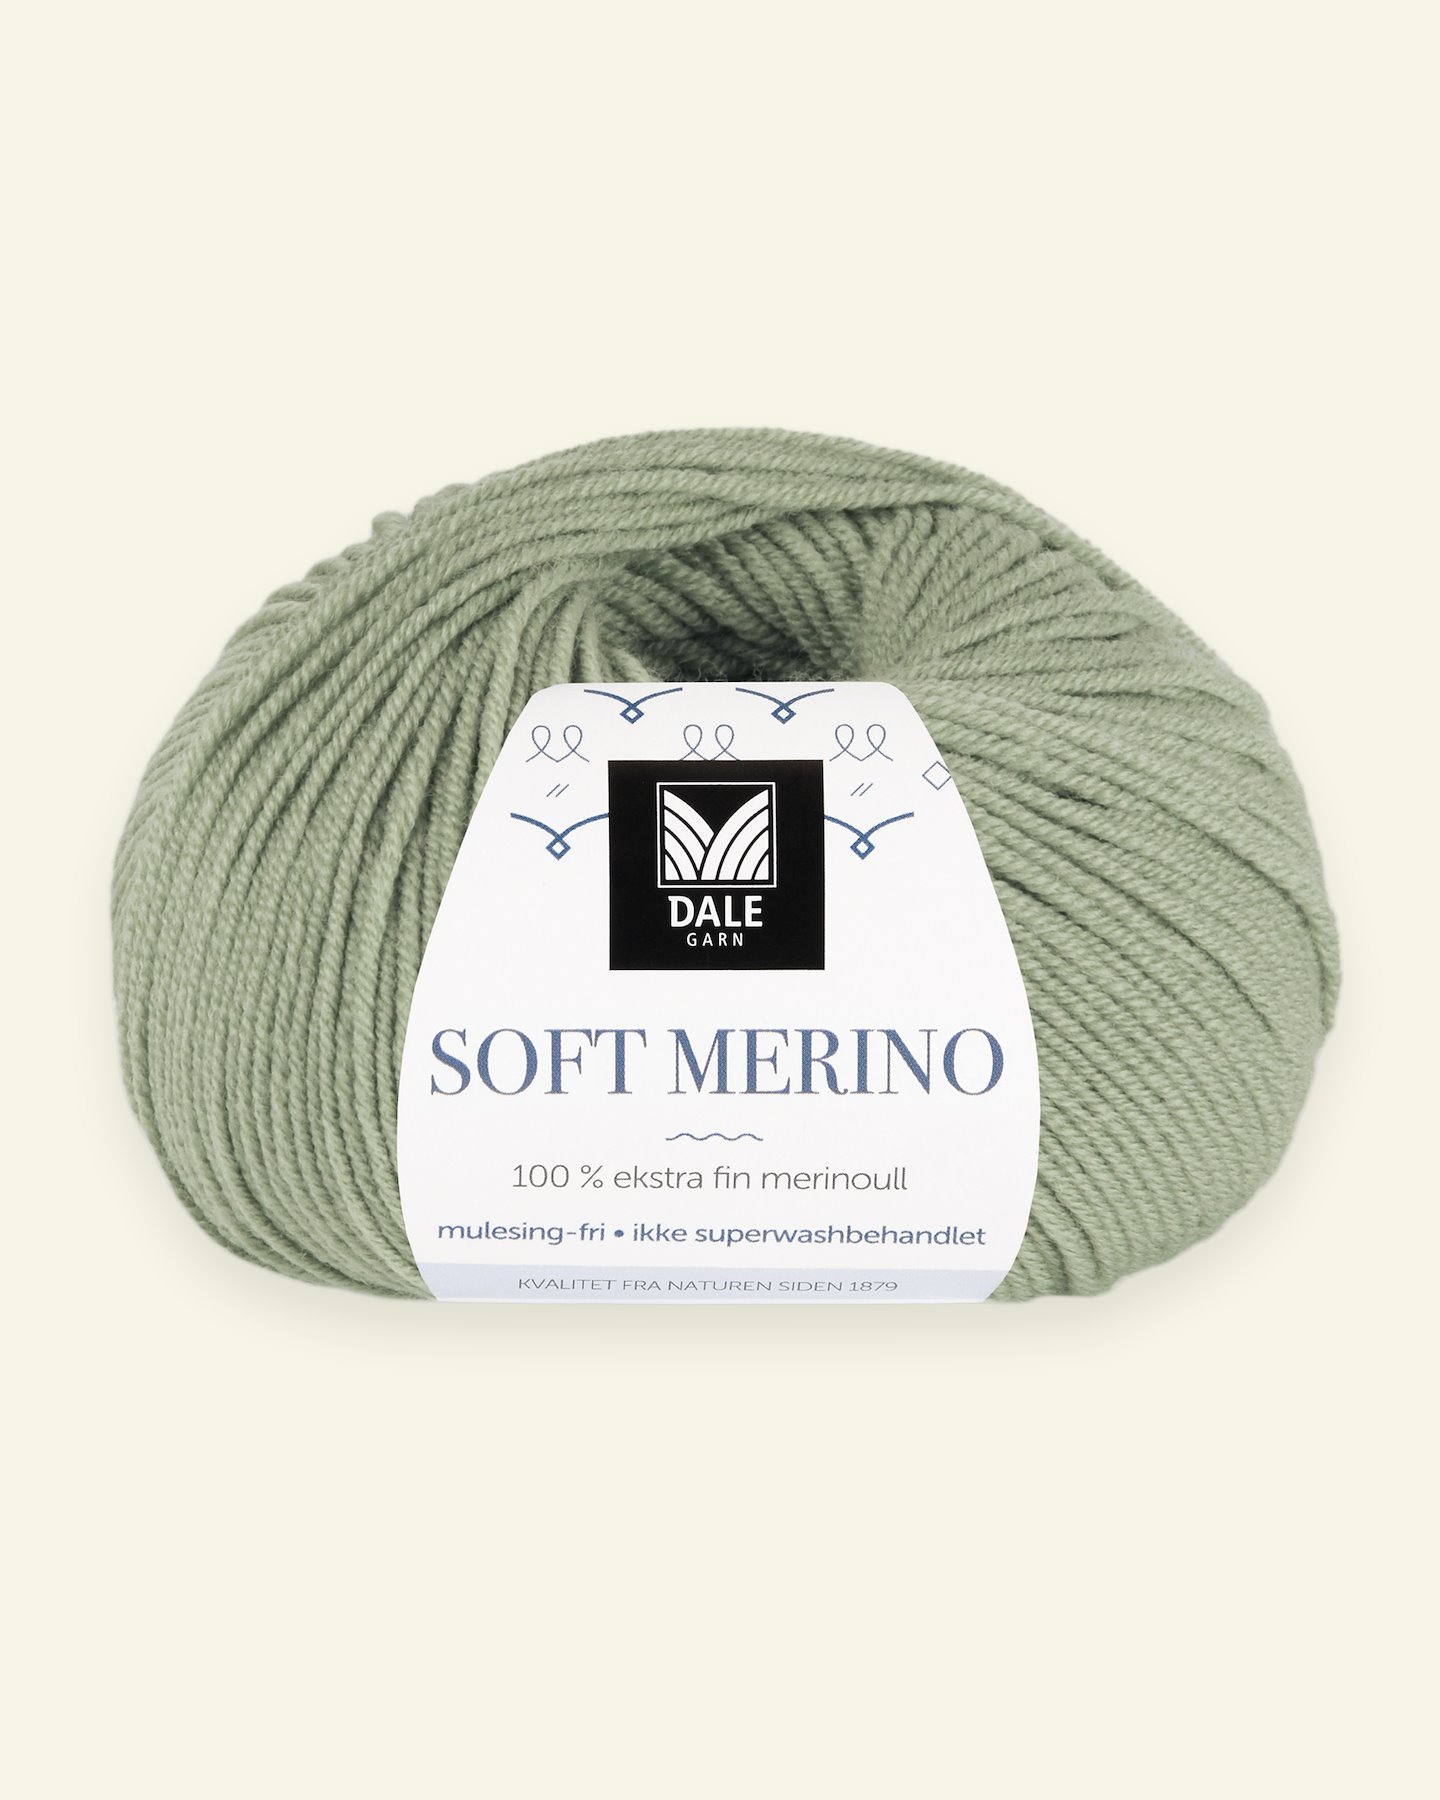 Dale Garn, 100% extra fine merino wool yarn, "Soft Merino", jadegreen (3010) 90000331_pack